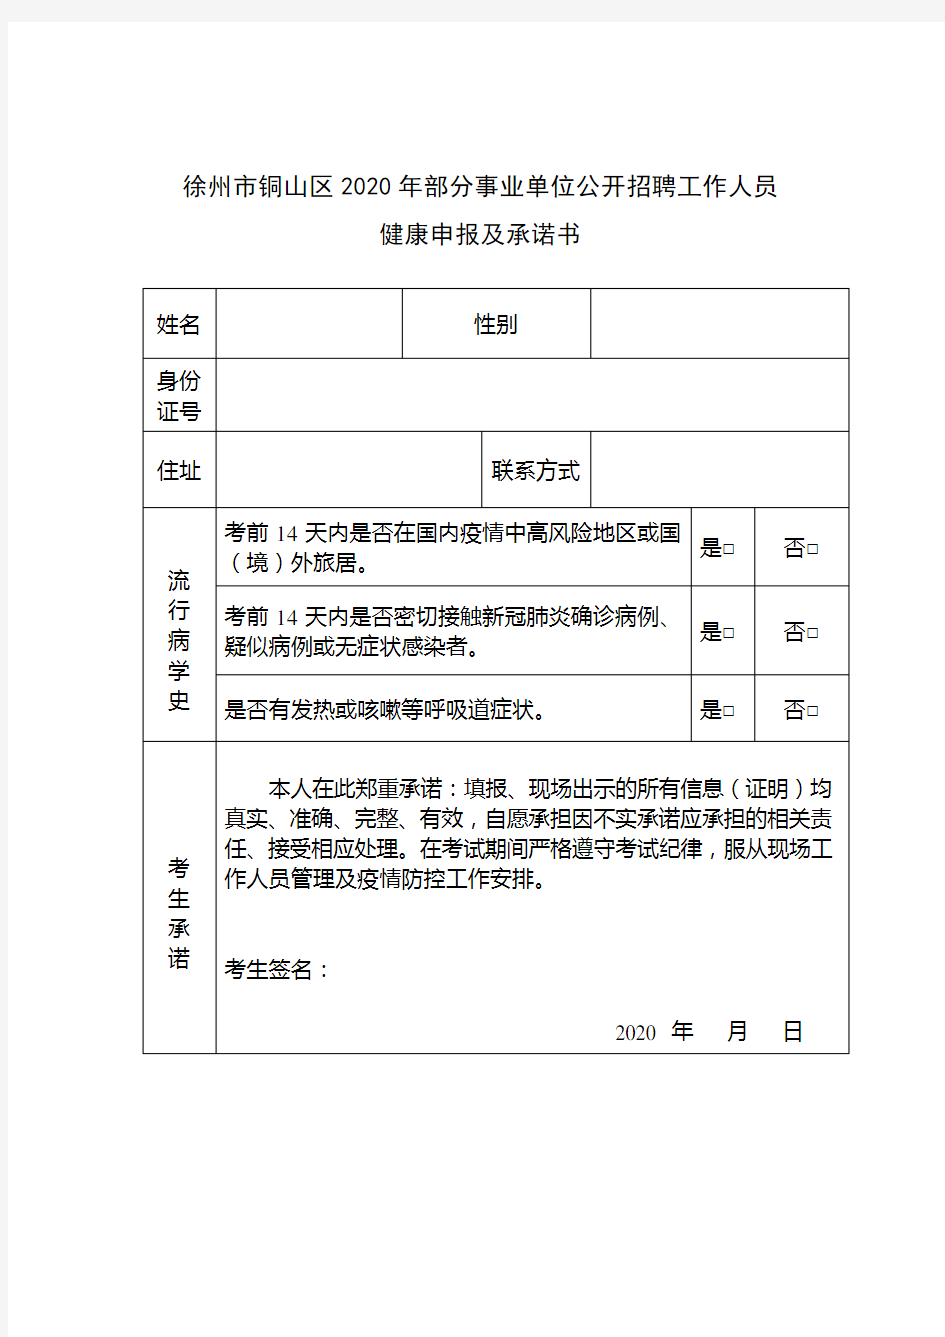 徐州市铜山区2020年部分事业单位公开招聘工作人员